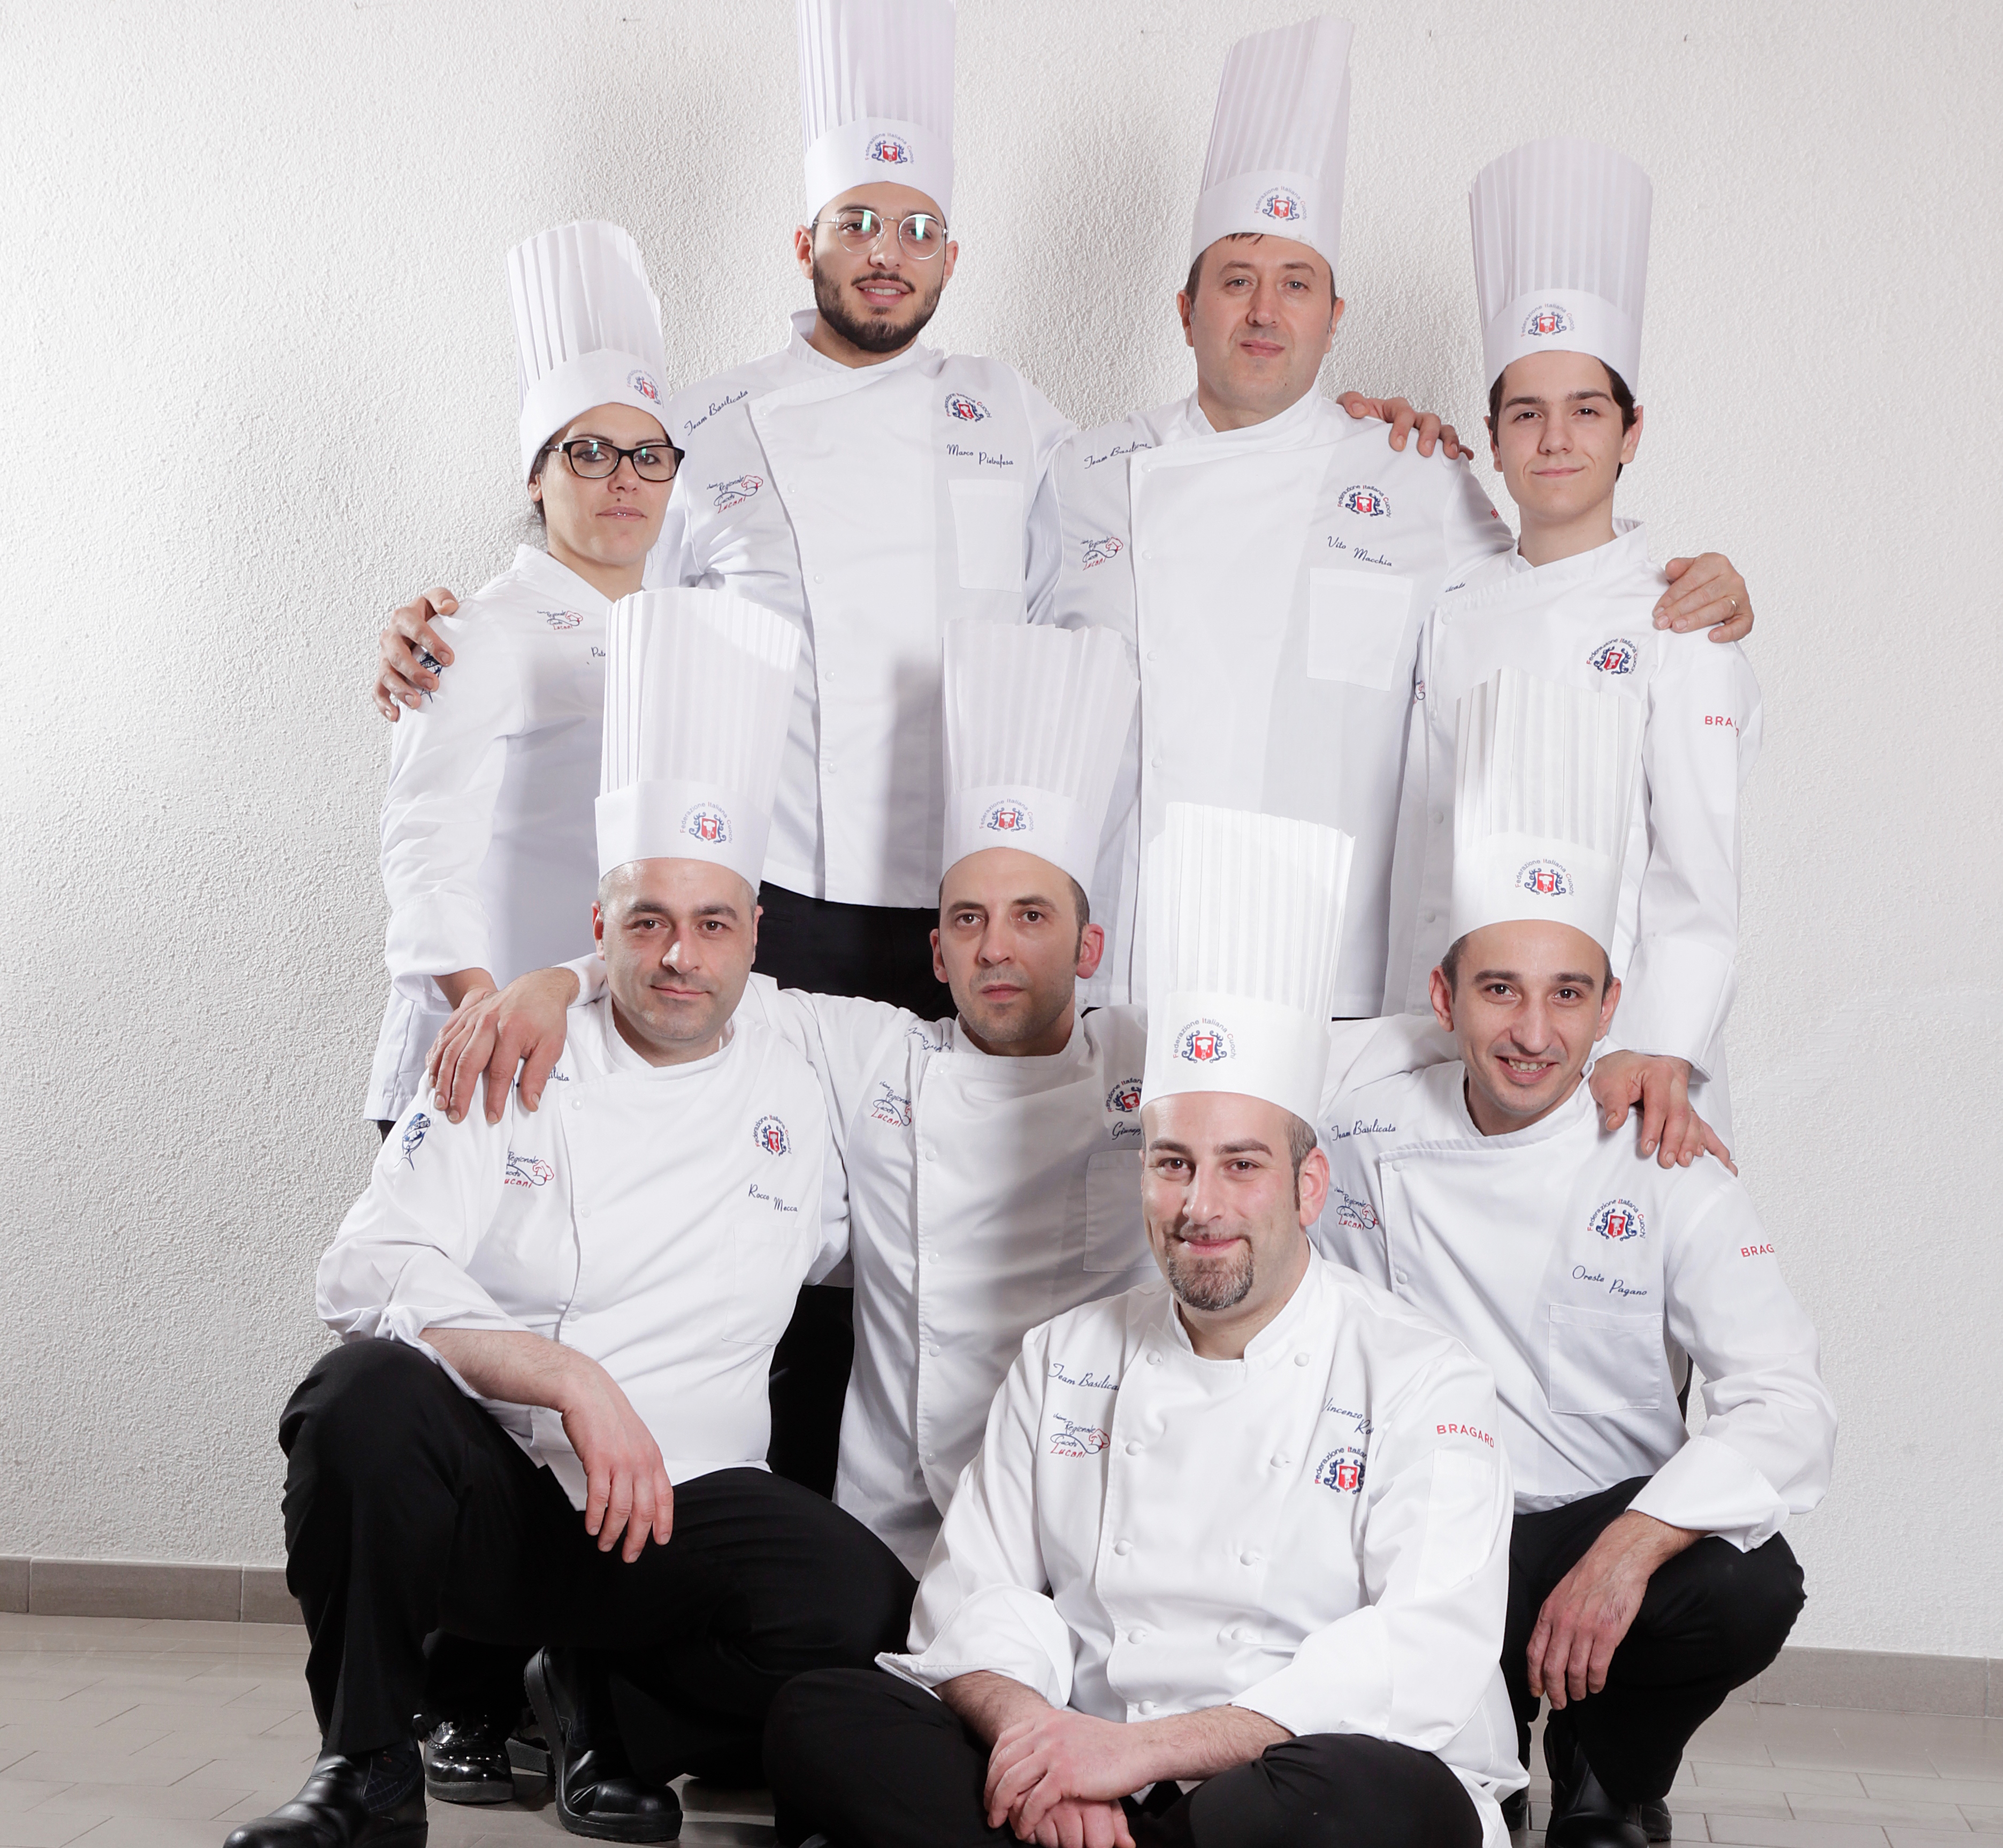 Il Team Basilicata medaglia d'oro ai Campionati di Cucina italiana di Rimini